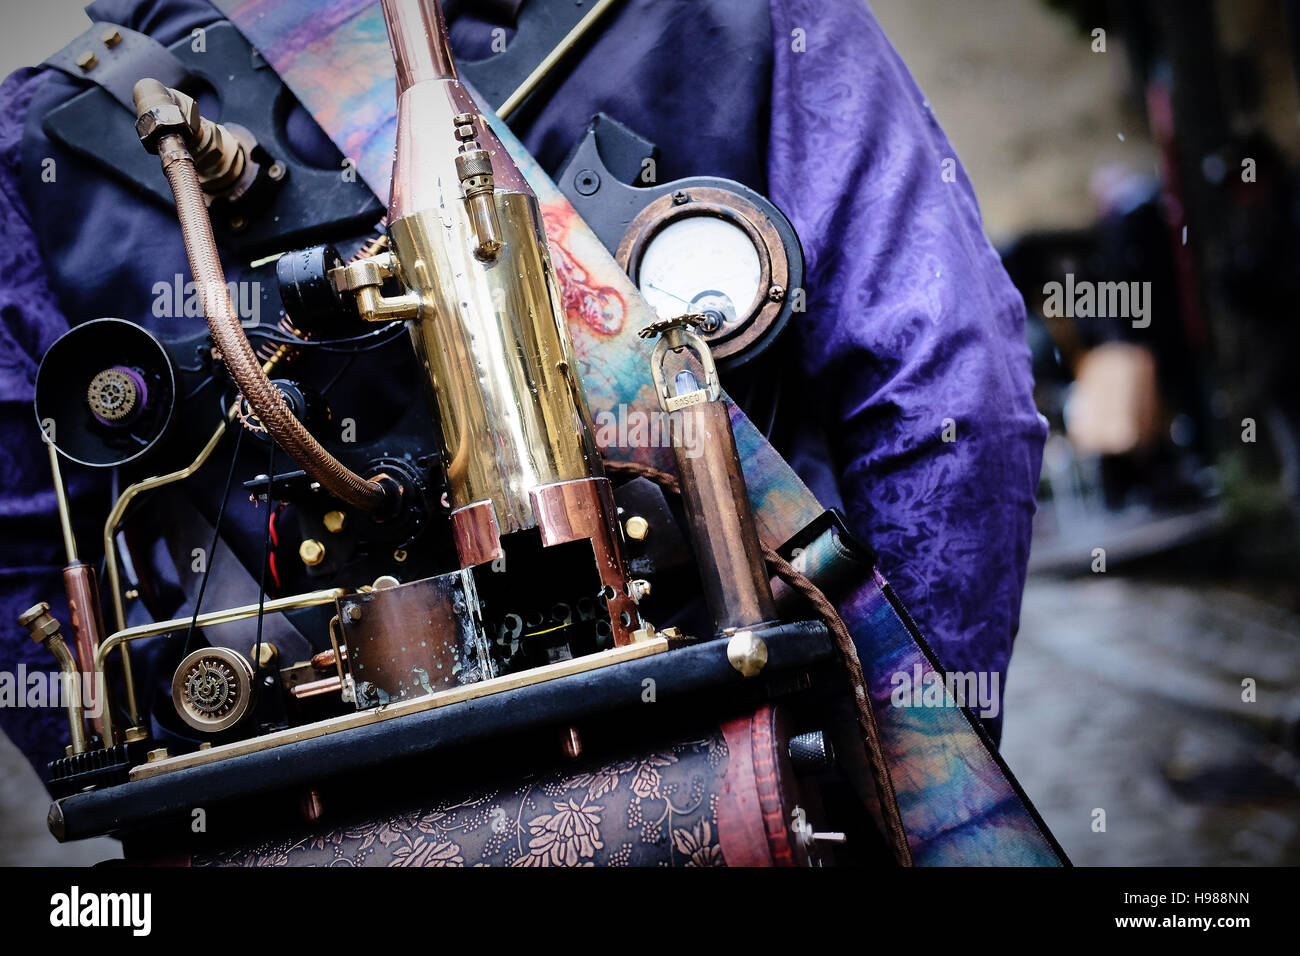 Un sac à dos de l'appareil à vapeur portés par un amateur de steampunk lors d'un événement Banque D'Images